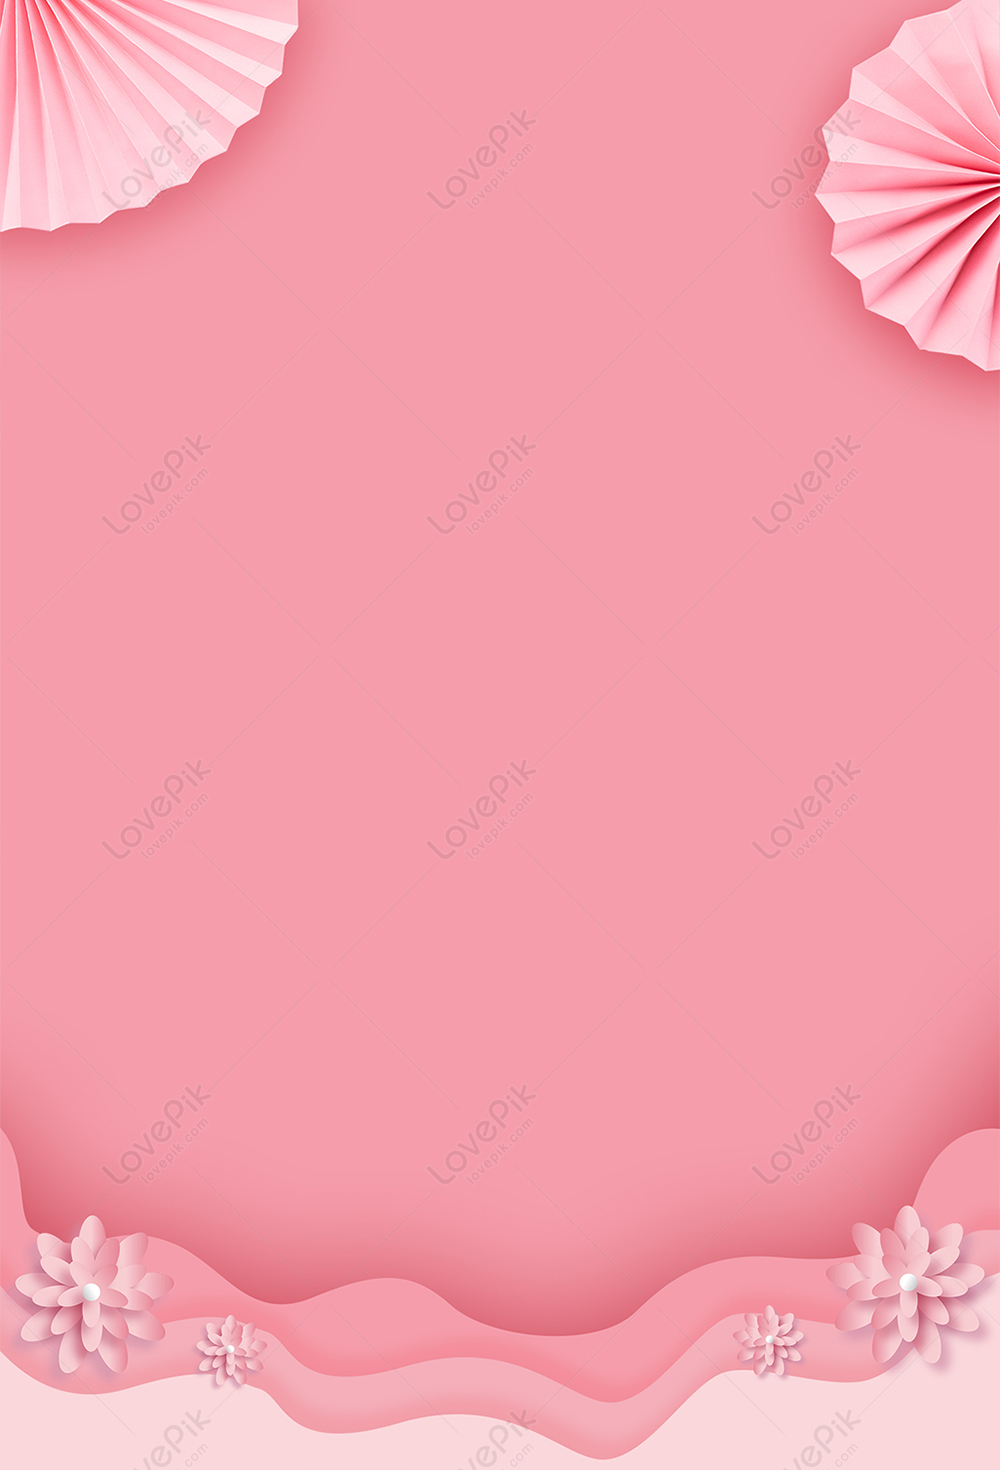 Hình nền màu hồng là lựa chọn hoàn hảo cho những ai yêu thích sự dịu dàng và nữ tính. Hãy cùng khám phá bộ sưu tập hình nền màu hồng tuyệt đẹp để làm mới màn hình điện thoại hoặc máy tính của bạn!